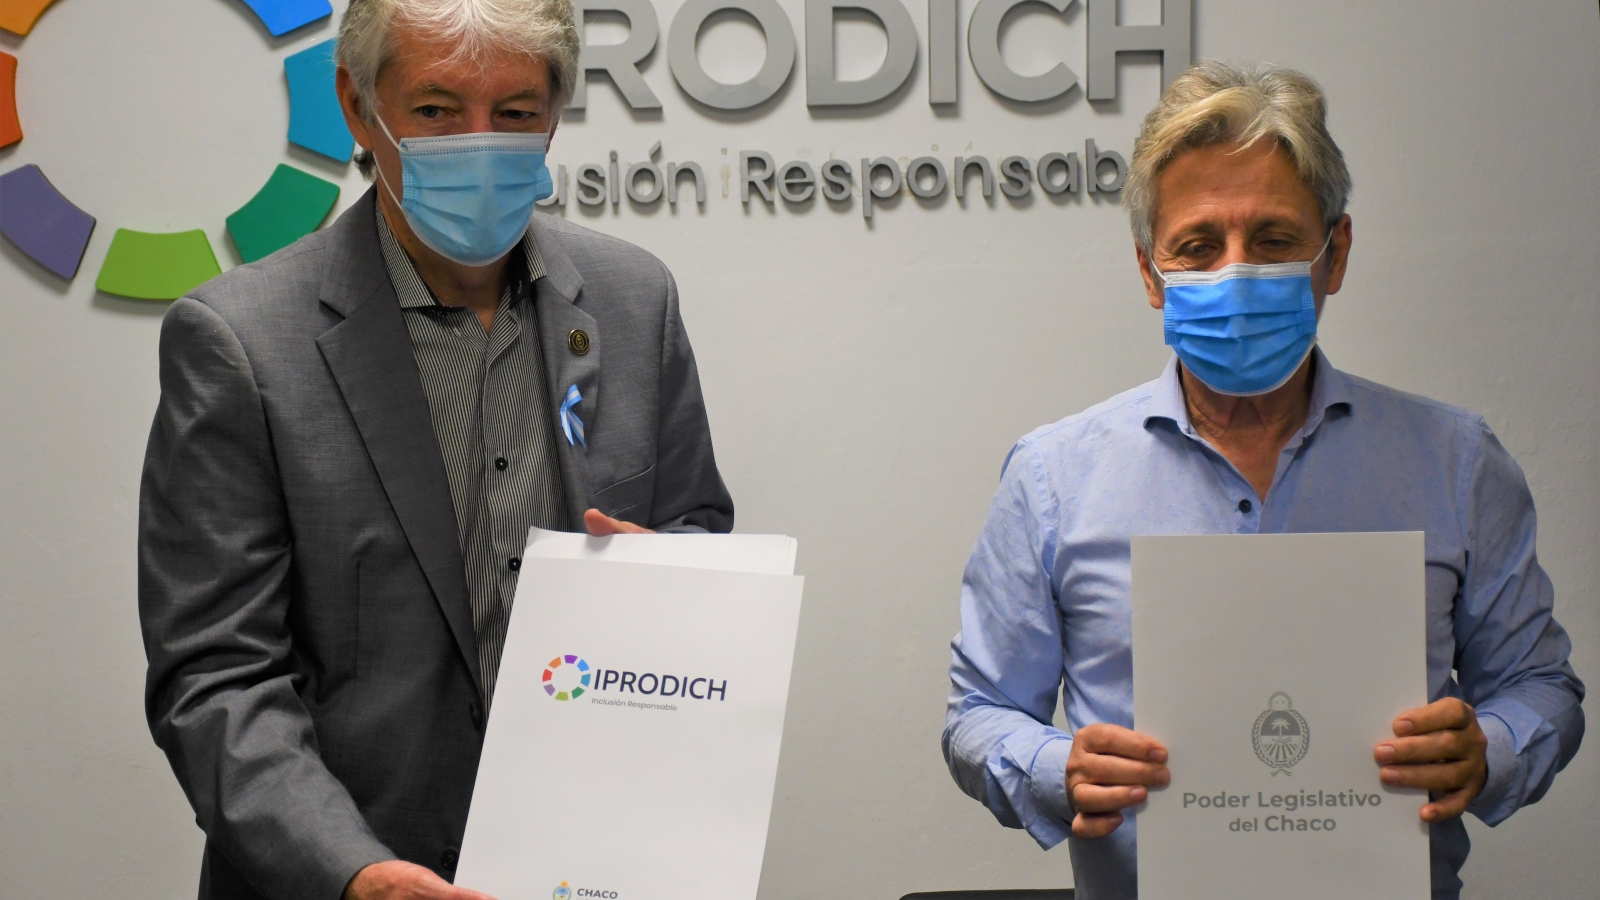 Sager y Lorenzo muestran el convenio firmado entre IPRODICH y el Poder Legislativo del Chaco